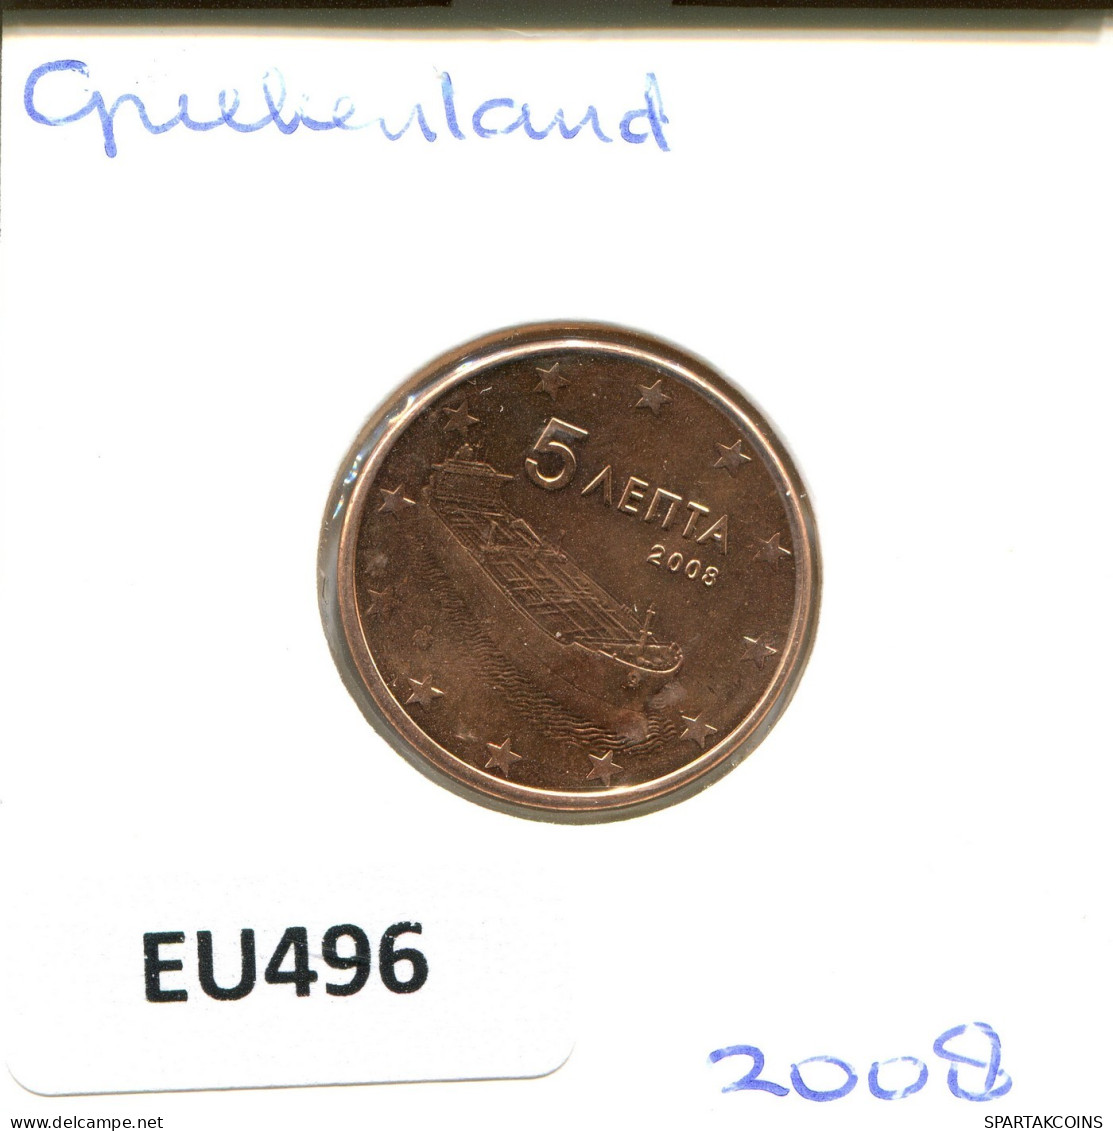 5 EURO CENTS 2008 GRIECHENLAND GREECE Münze #EU496.D.A - Griekenland